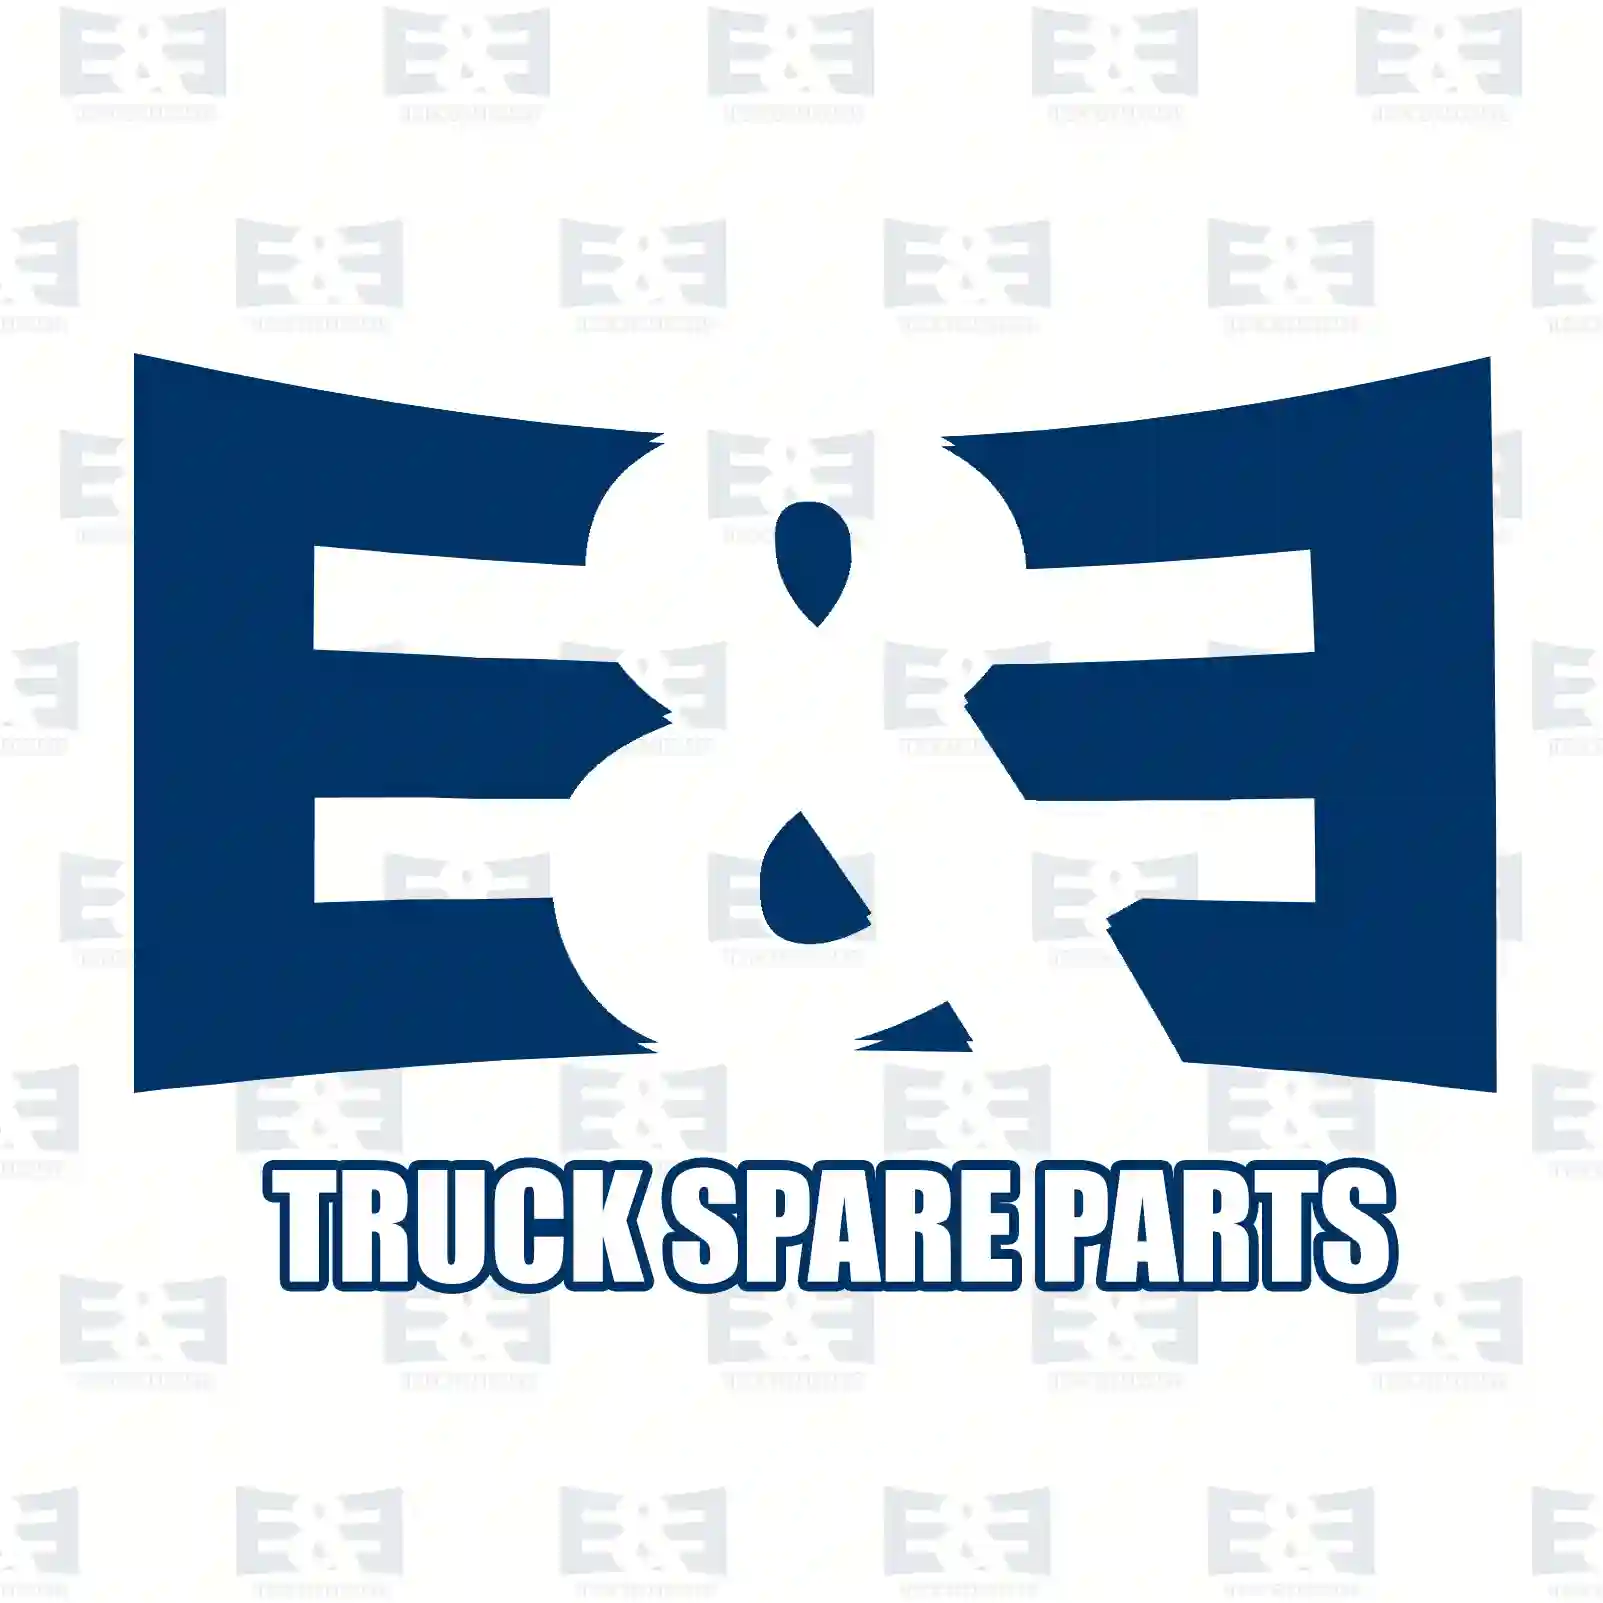 Bushing, 2E2205777, 3214620165, , ||  2E2205777 E&E Truck Spare Parts | Truck Spare Parts, Auotomotive Spare Parts Bushing, 2E2205777, 3214620165, , ||  2E2205777 E&E Truck Spare Parts | Truck Spare Parts, Auotomotive Spare Parts